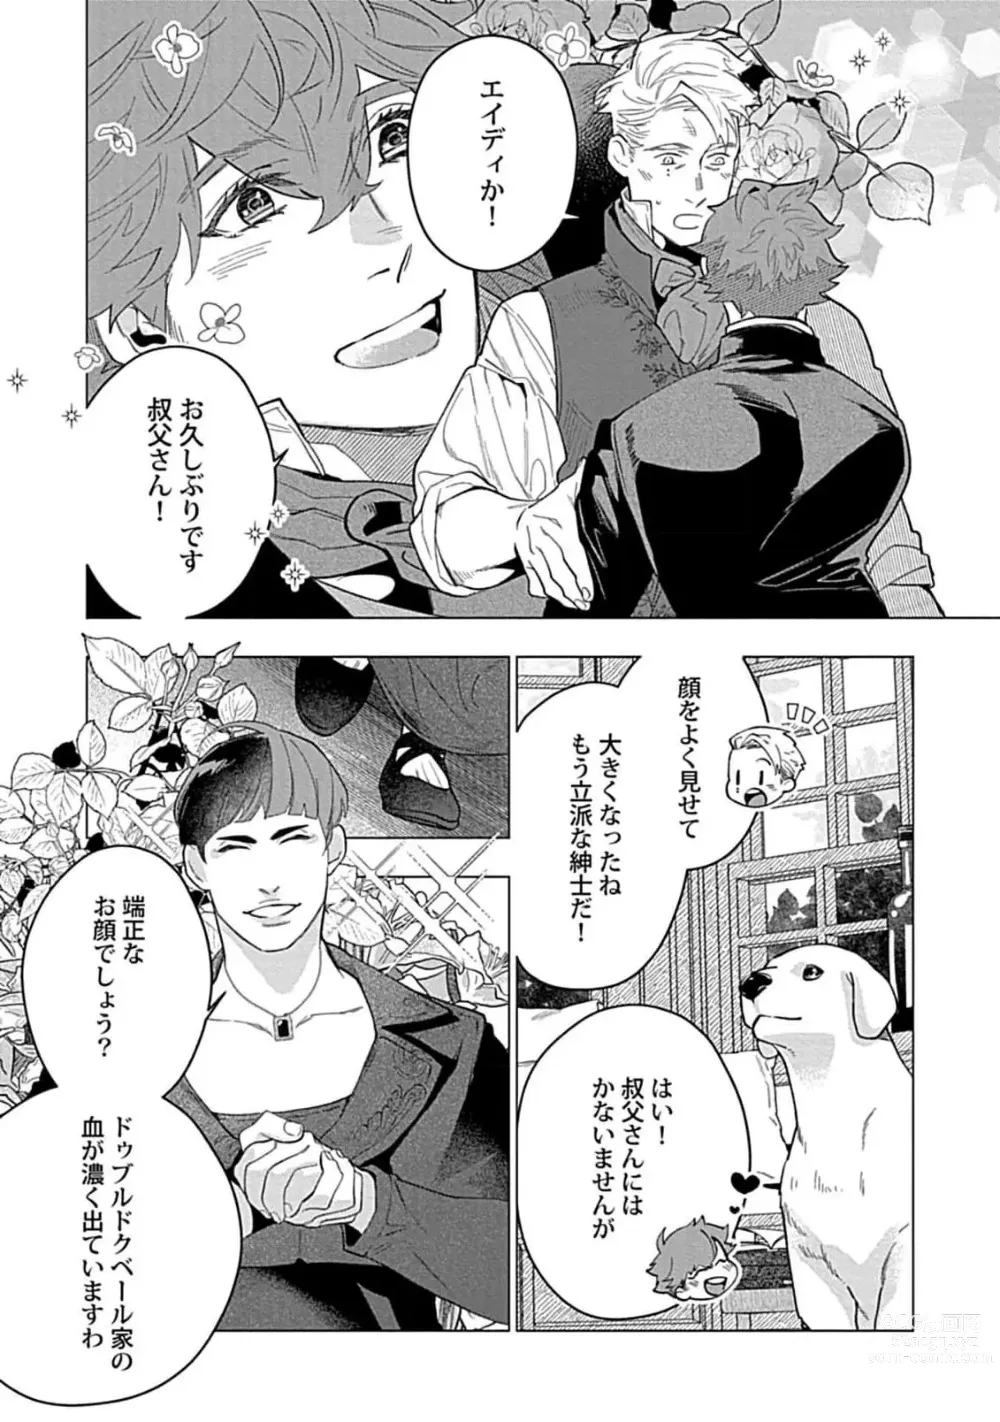 Page 7 of manga Hoshikuzu no Debutante - Debutante of Stardust 1